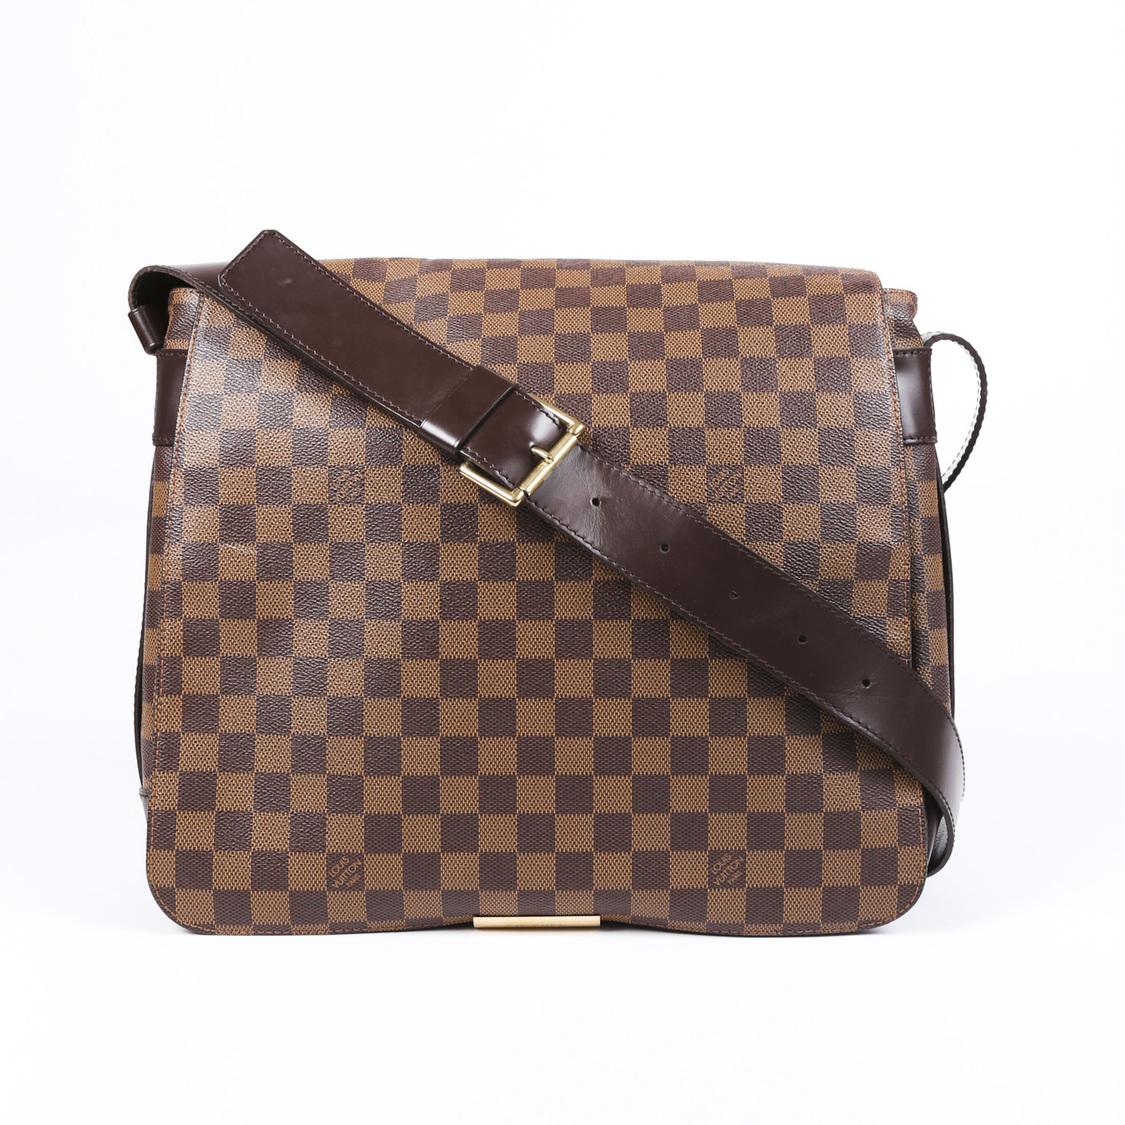 Louis Vuitton Damier Ebene Abbesses Messenger Bag in Brown for Men - Lyst